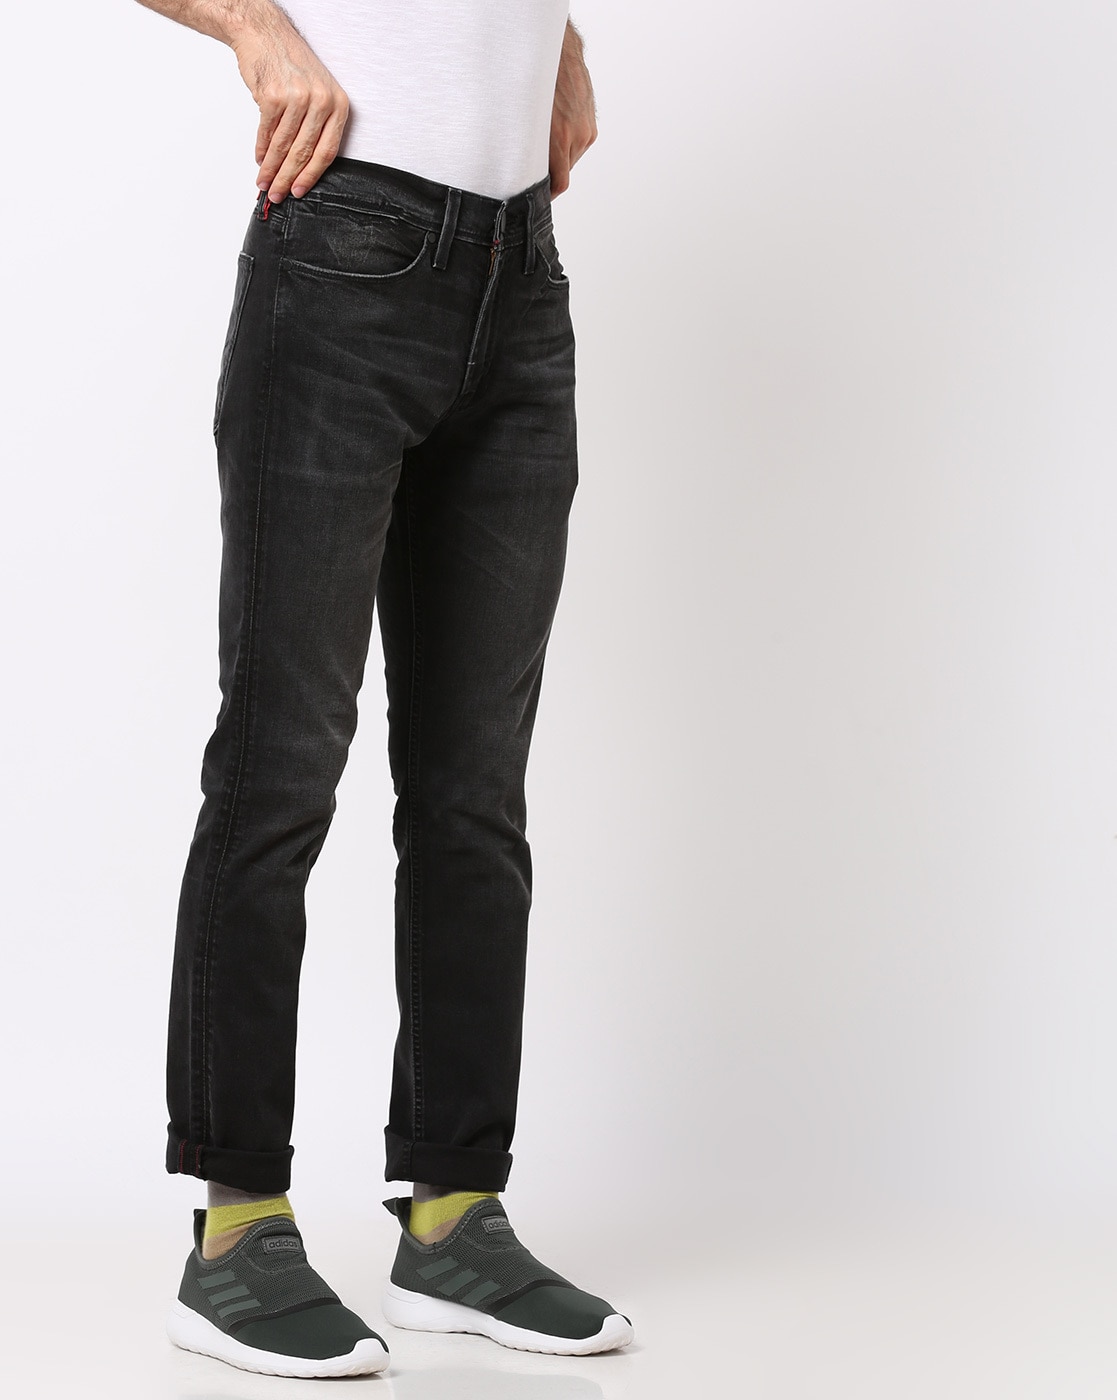 levis 511 black jeans india